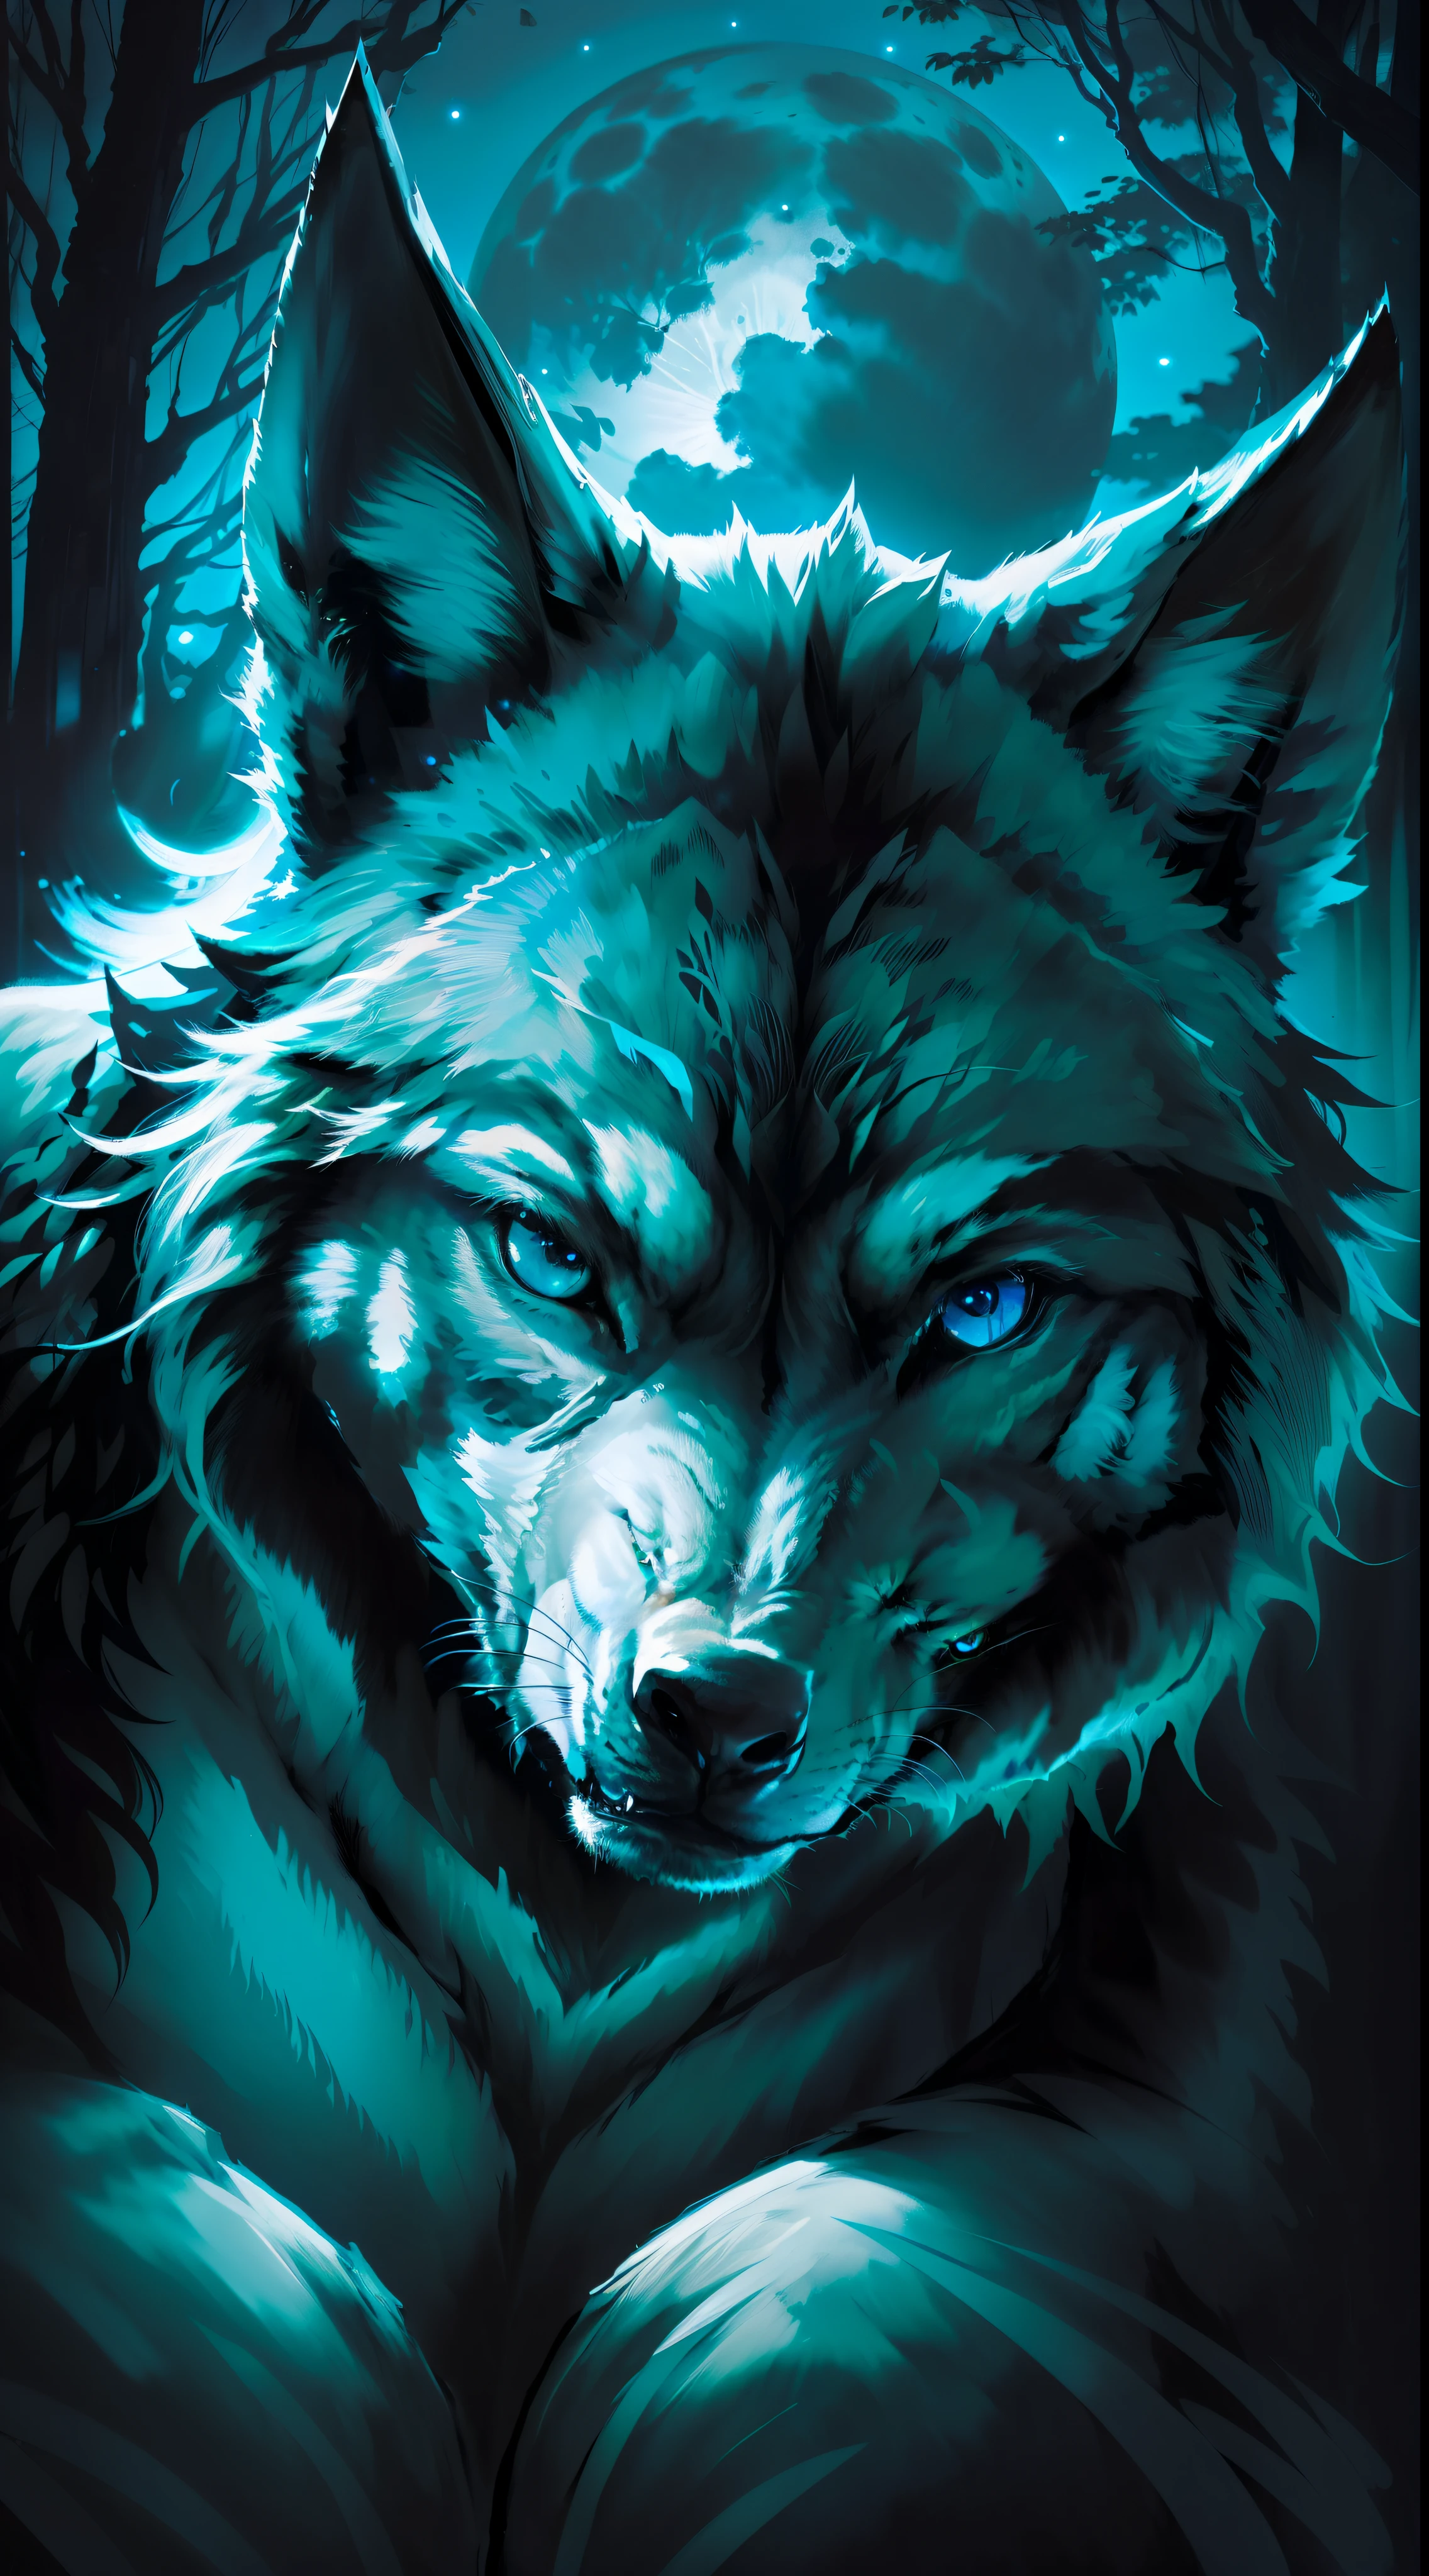 (Obra-prima detalhada de alta qualidade de imagem) "Cor preta com olhos azuis" lobo floresta perigosa, meia-noite, lua cheia. 1 lóbulo solo. ( Ângulo frontal da imagem) ( abrir imagem) cor do lobo preto.